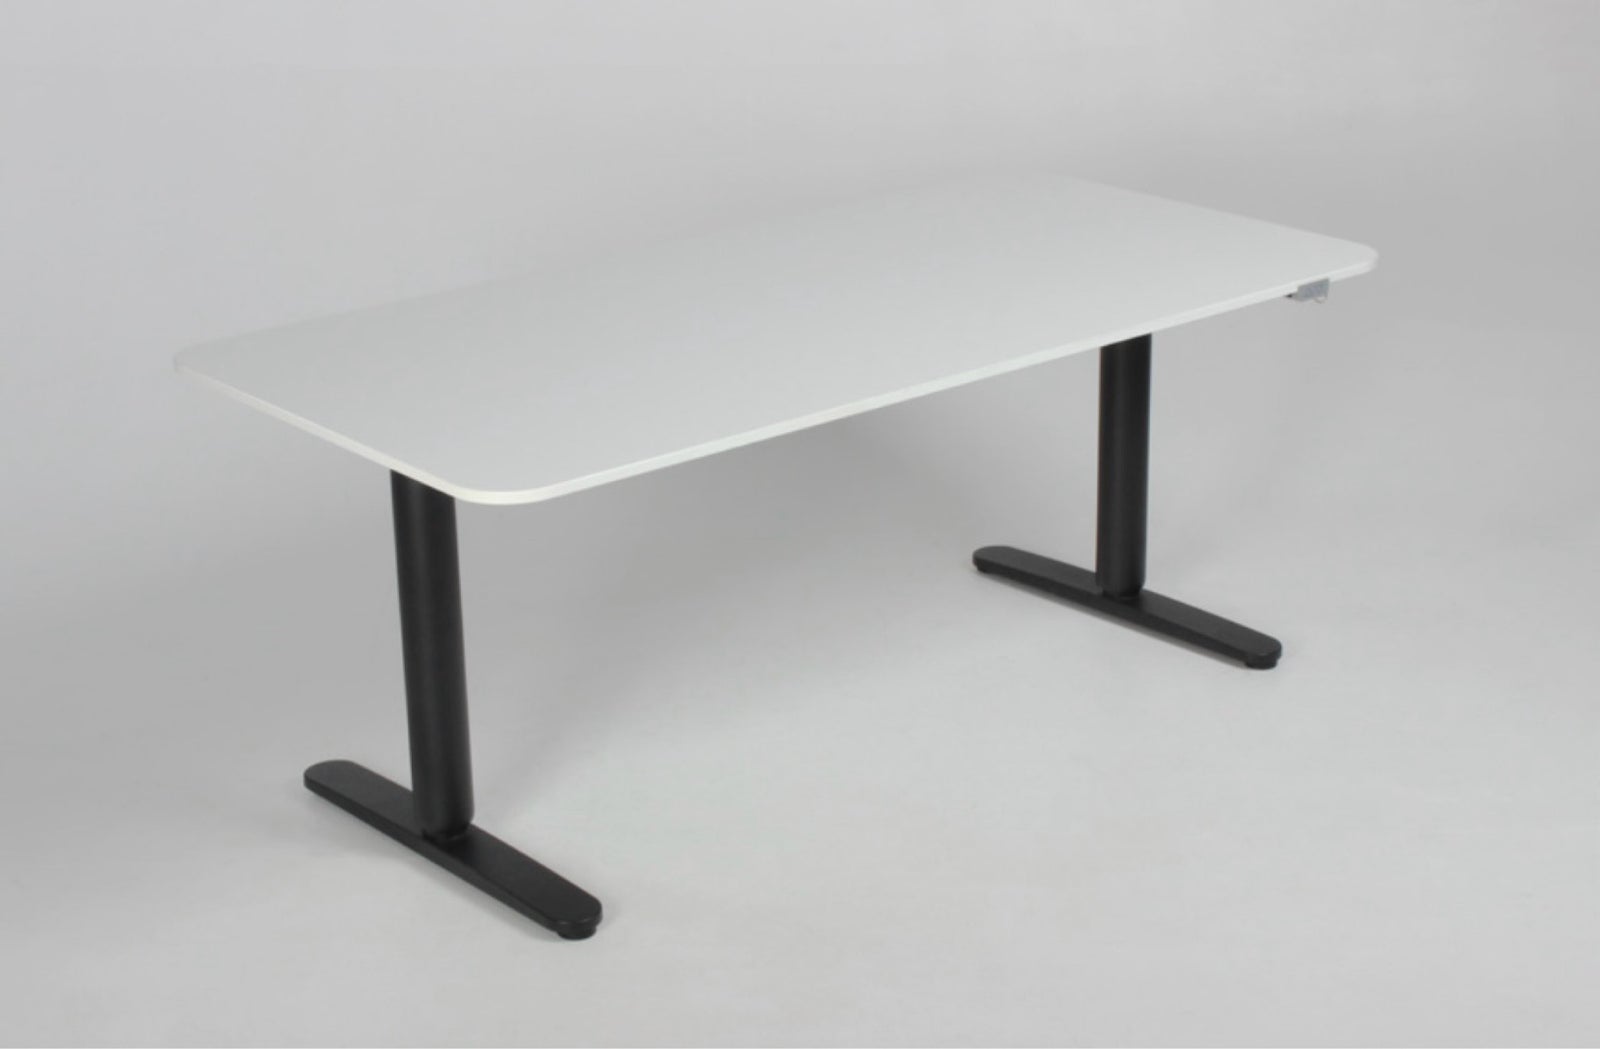 Computerbord, Ikea Bekant hæve/sænke, b: 160 d: 80